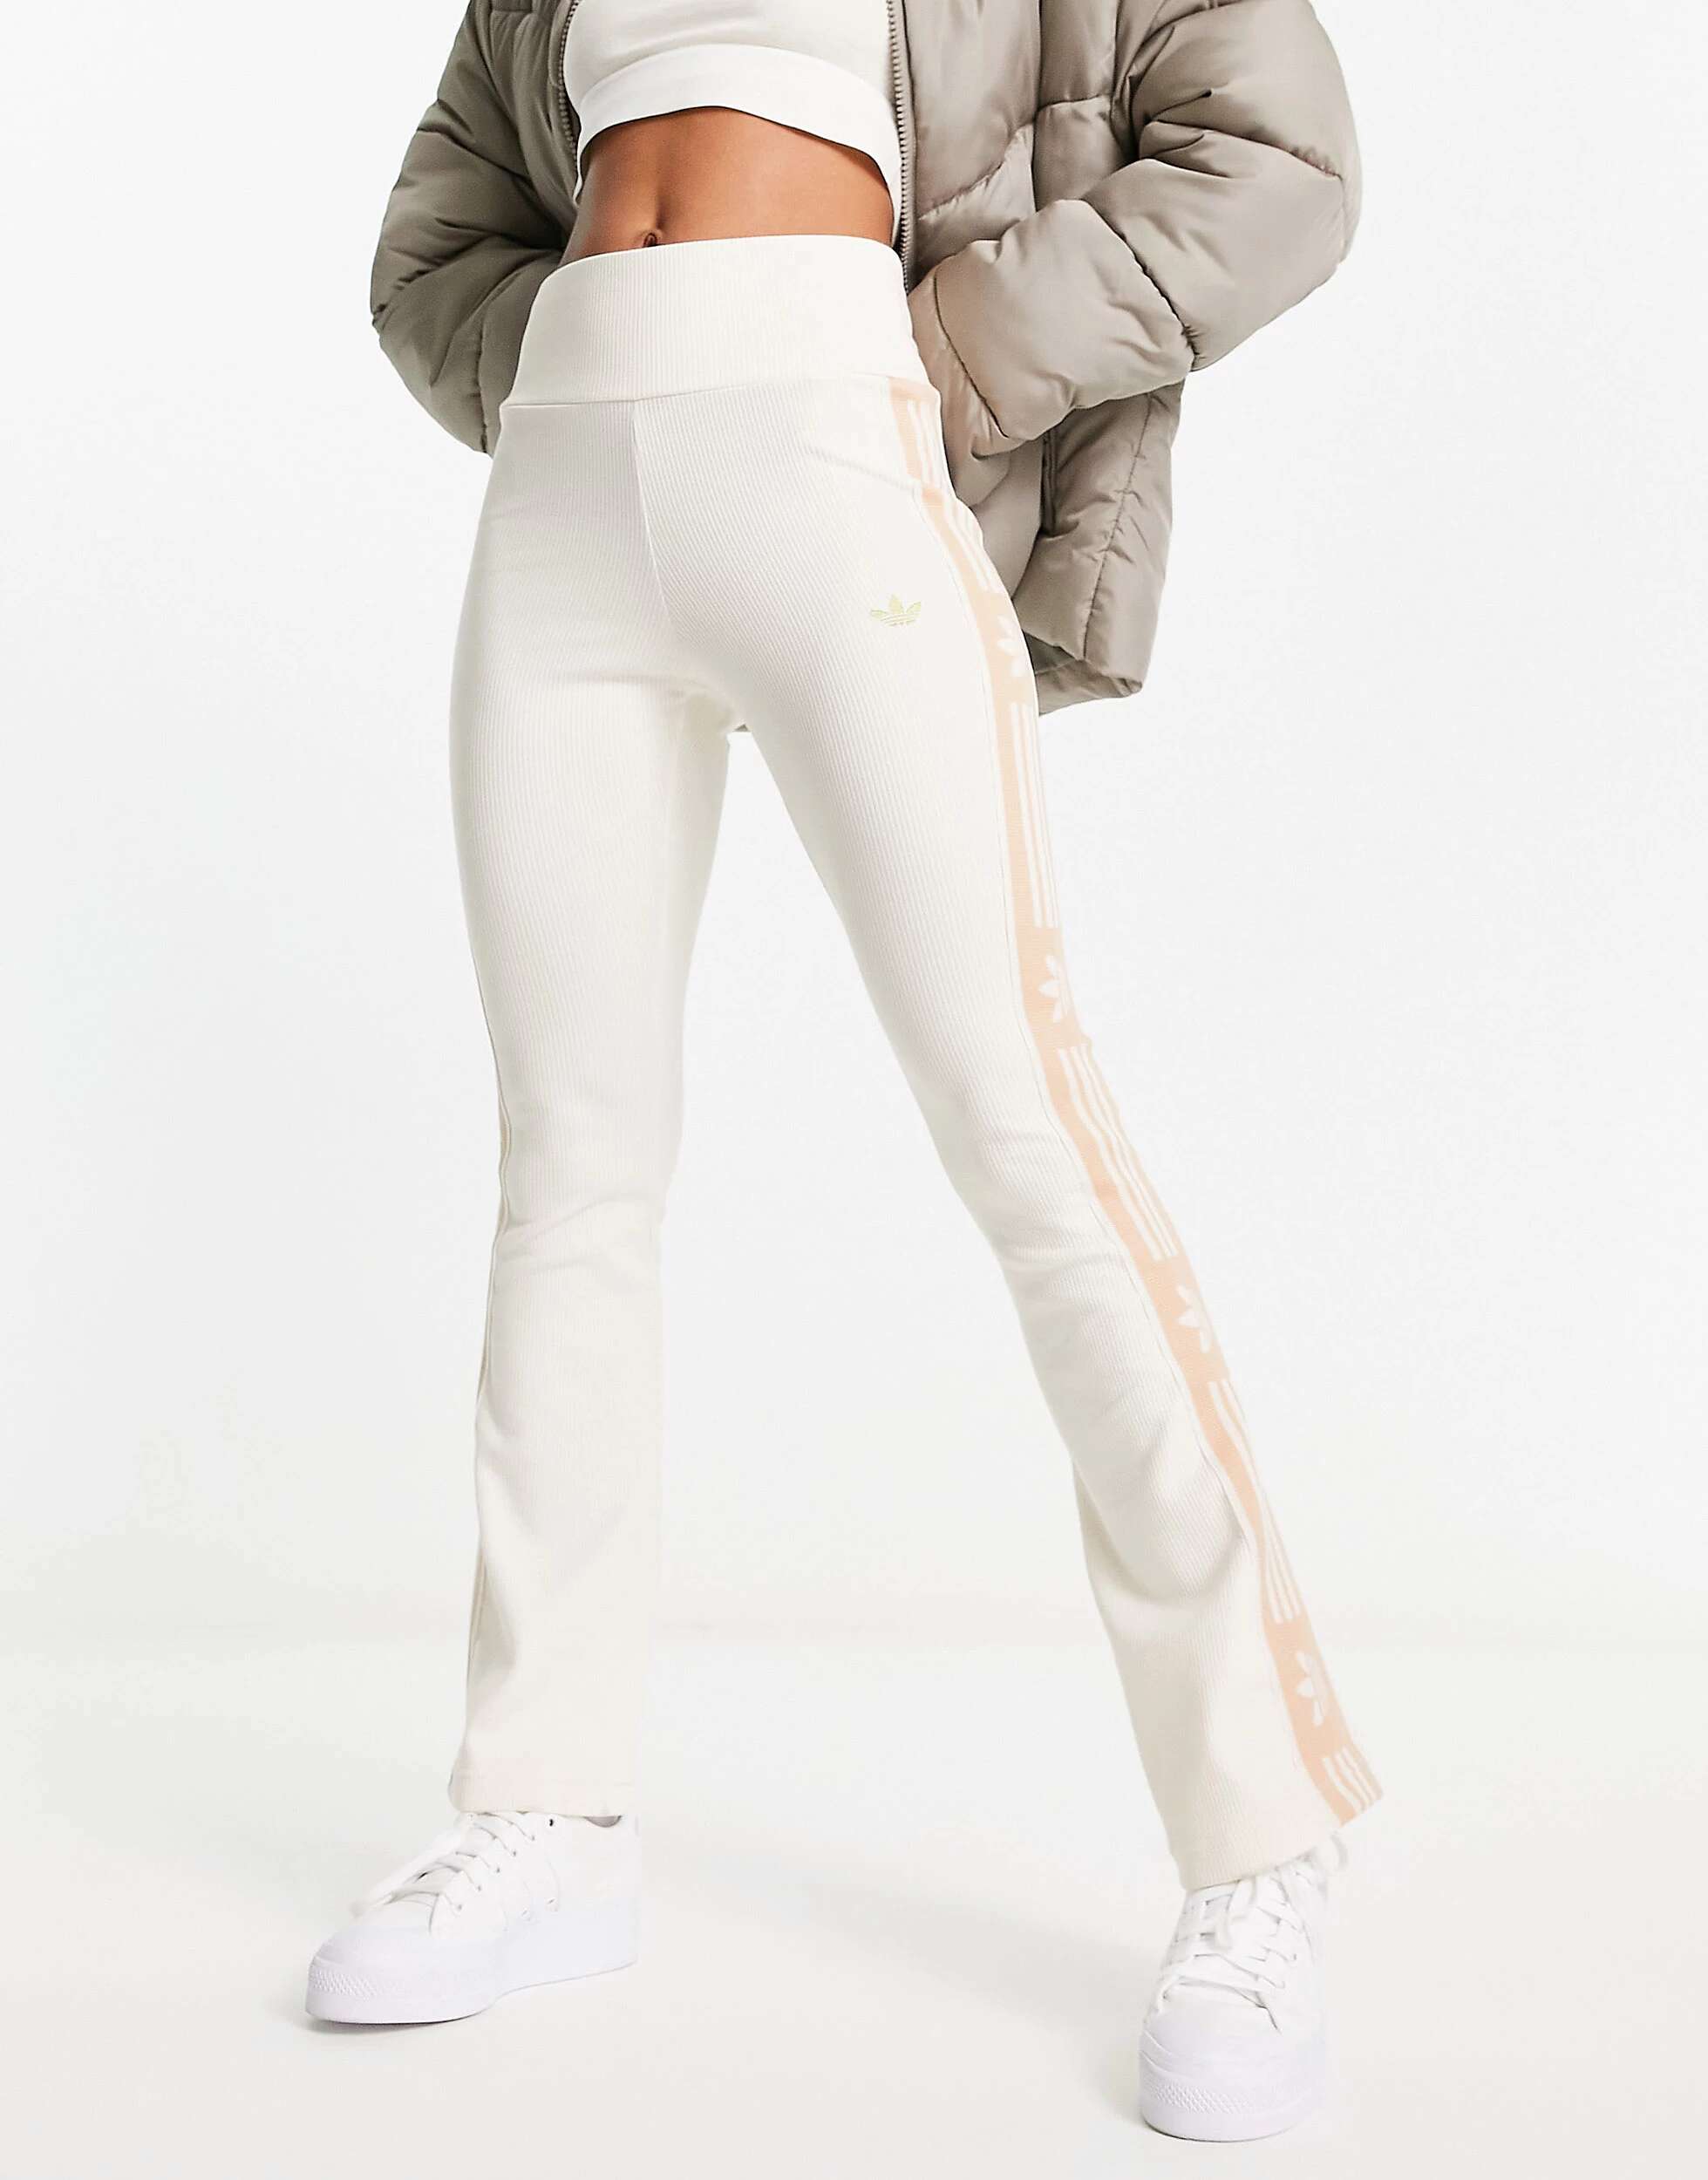 Овсяновые леггинсы adidas Originals 'ski chic' с расклешенными рубчиками